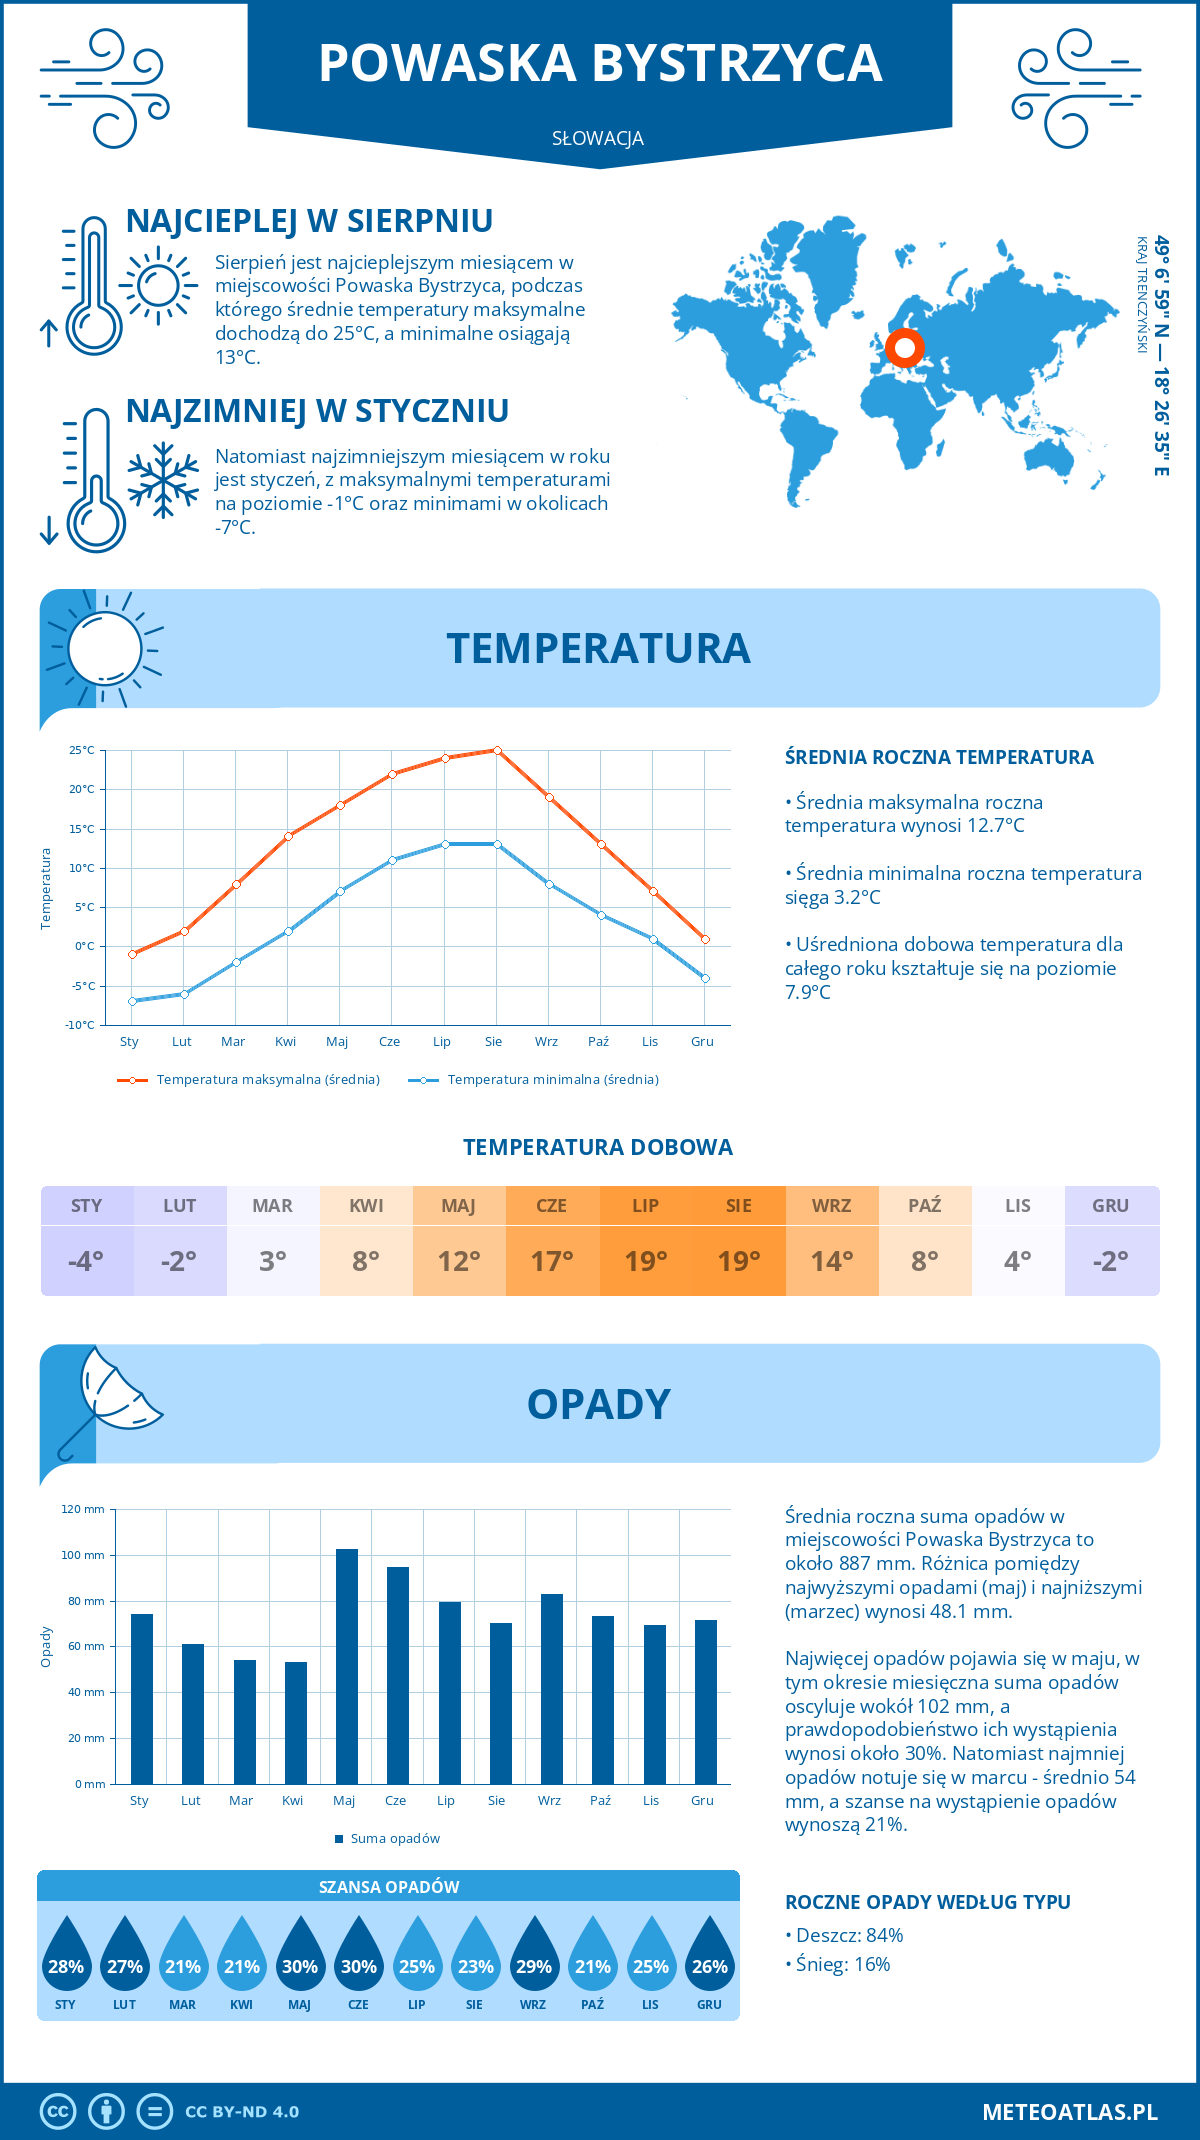 Pogoda Powaska Bystrzyca (Słowacja). Temperatura oraz opady.